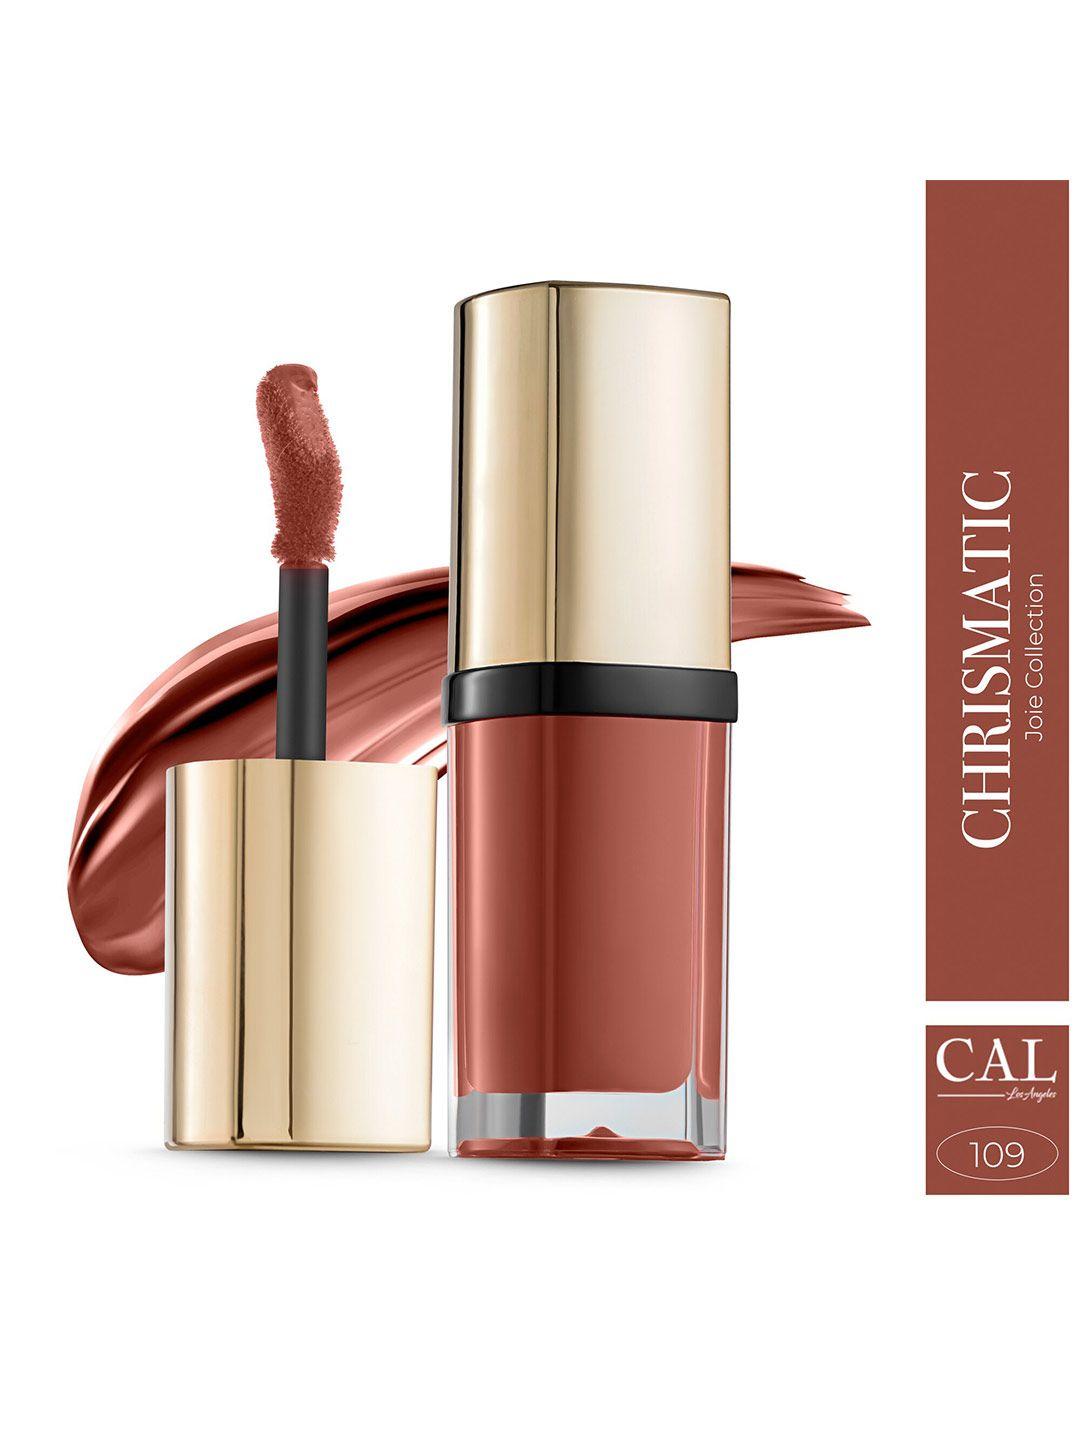 cal losangeles joie collection liquid matte lipstick 5 ml - charismatic 109